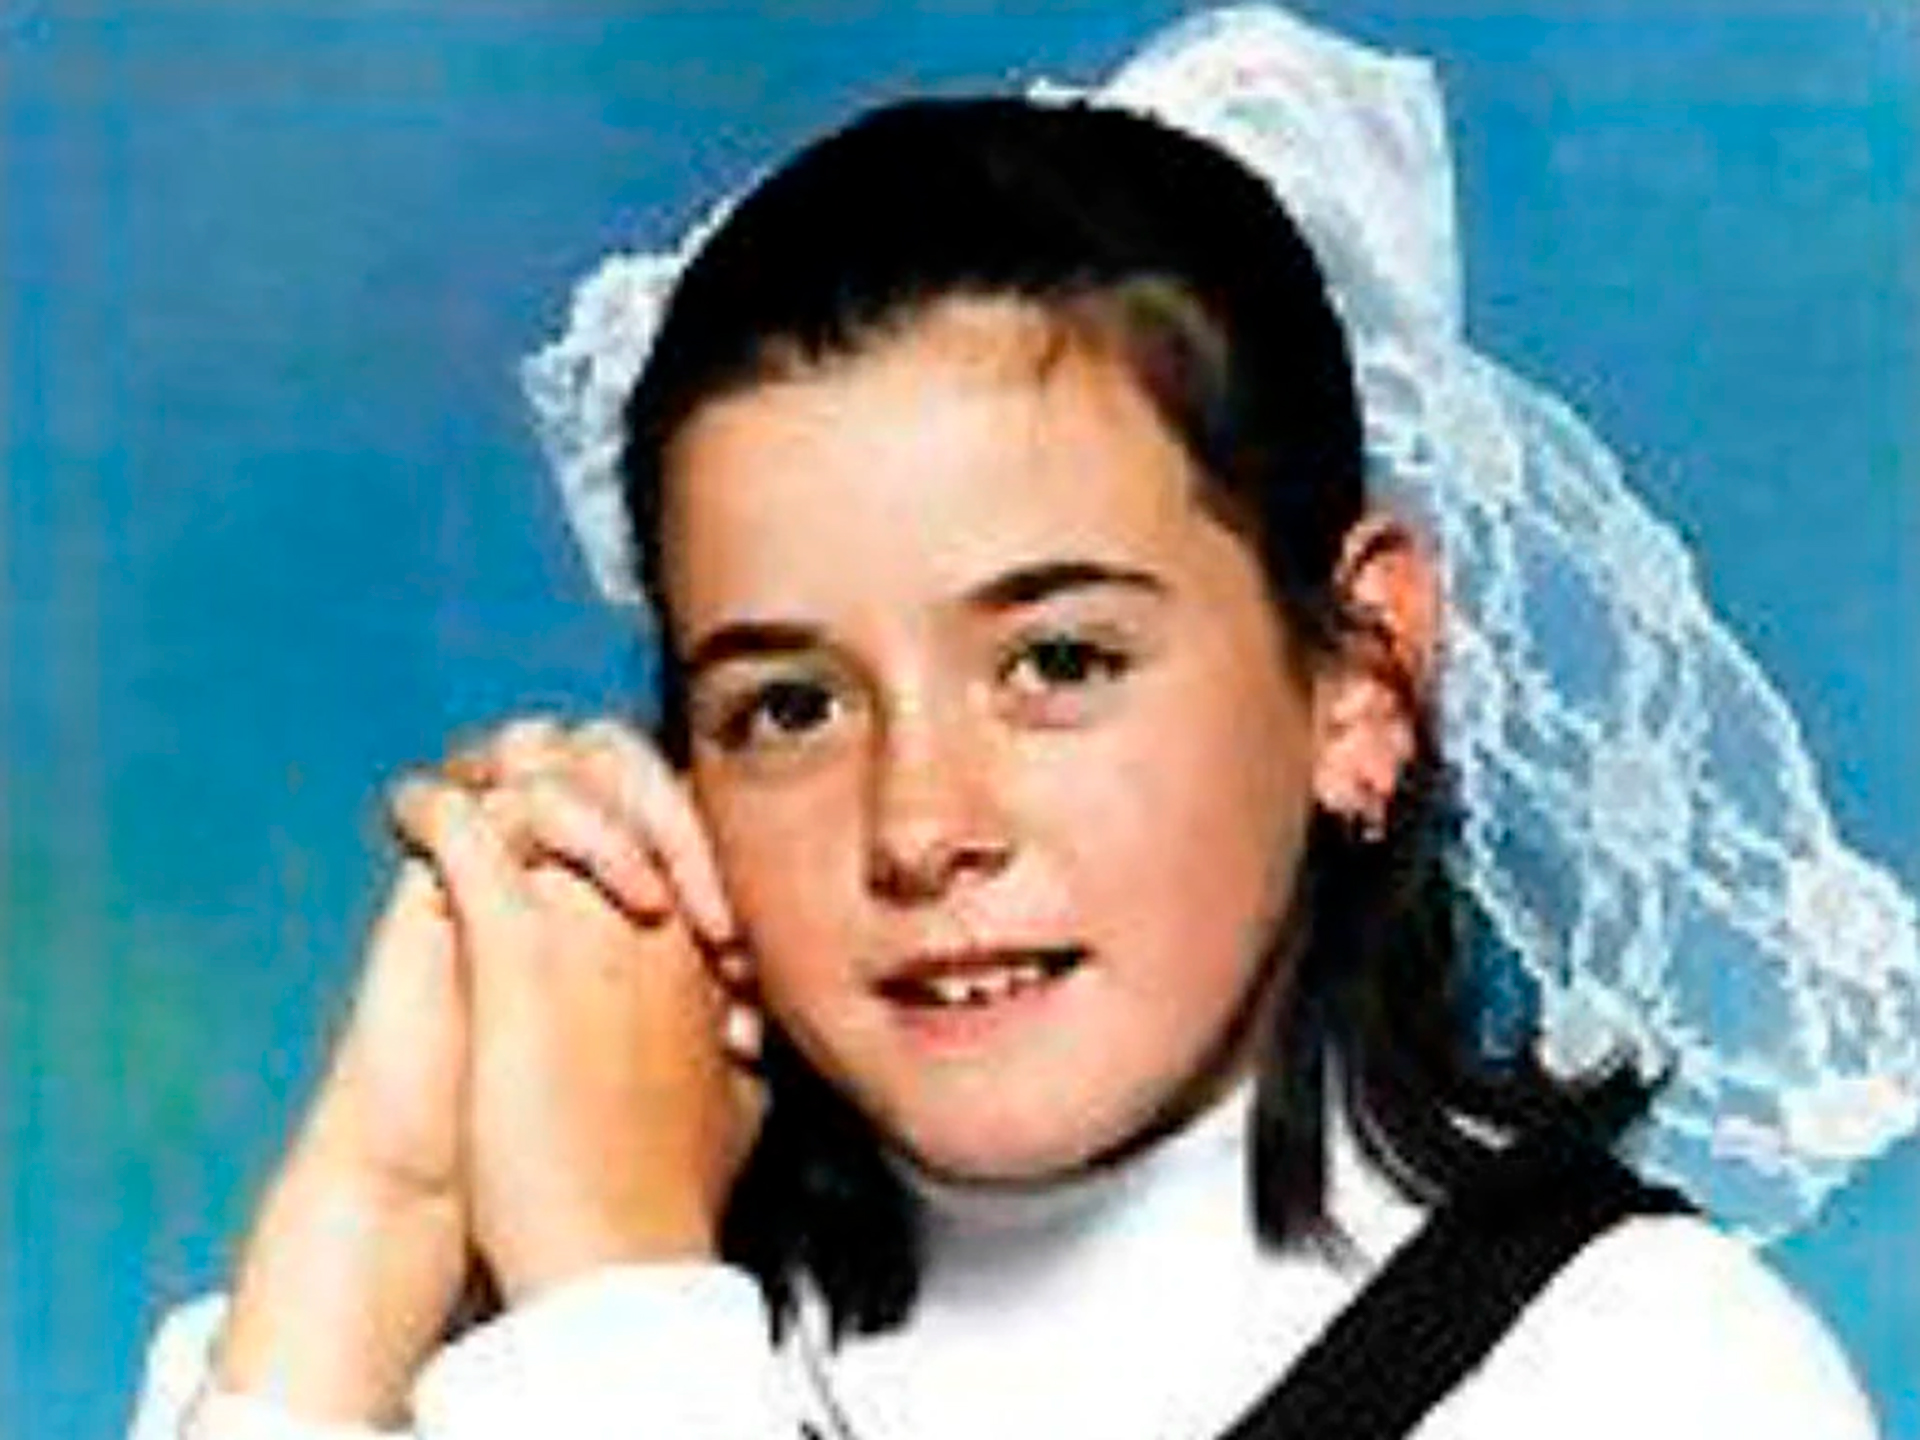 Natasha Ryan despareció cuando tenía 14 años. Todos creyeron que había sido asesinada. Cinc años después, conocieron la desconcertante verdad: estaba viva y se había escondido en un ropero